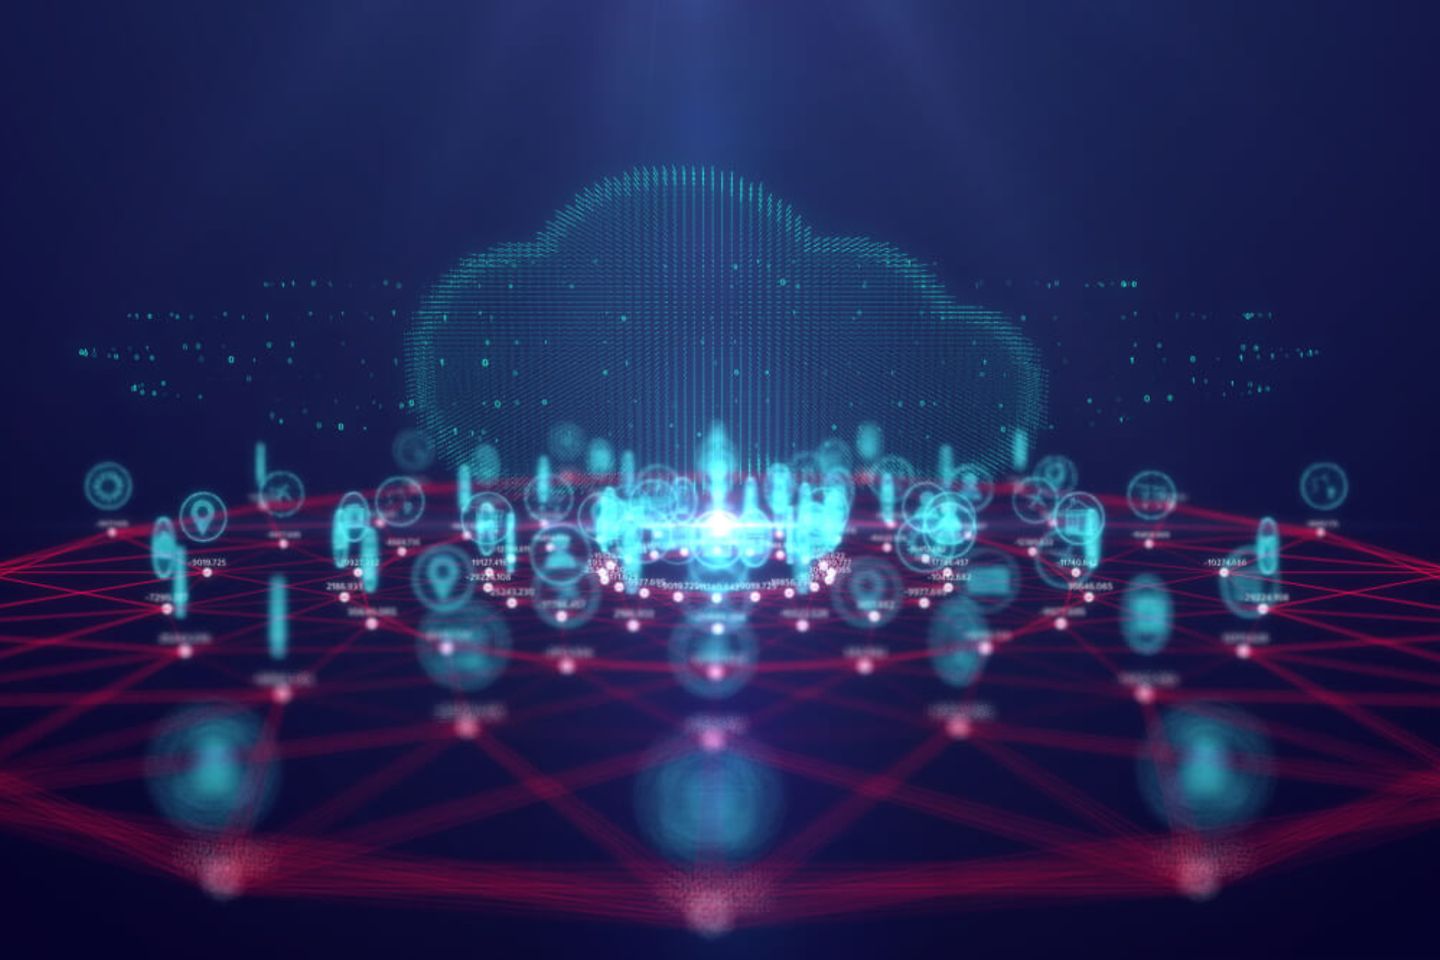 Tecnología cloud computing y enfoque de IoT